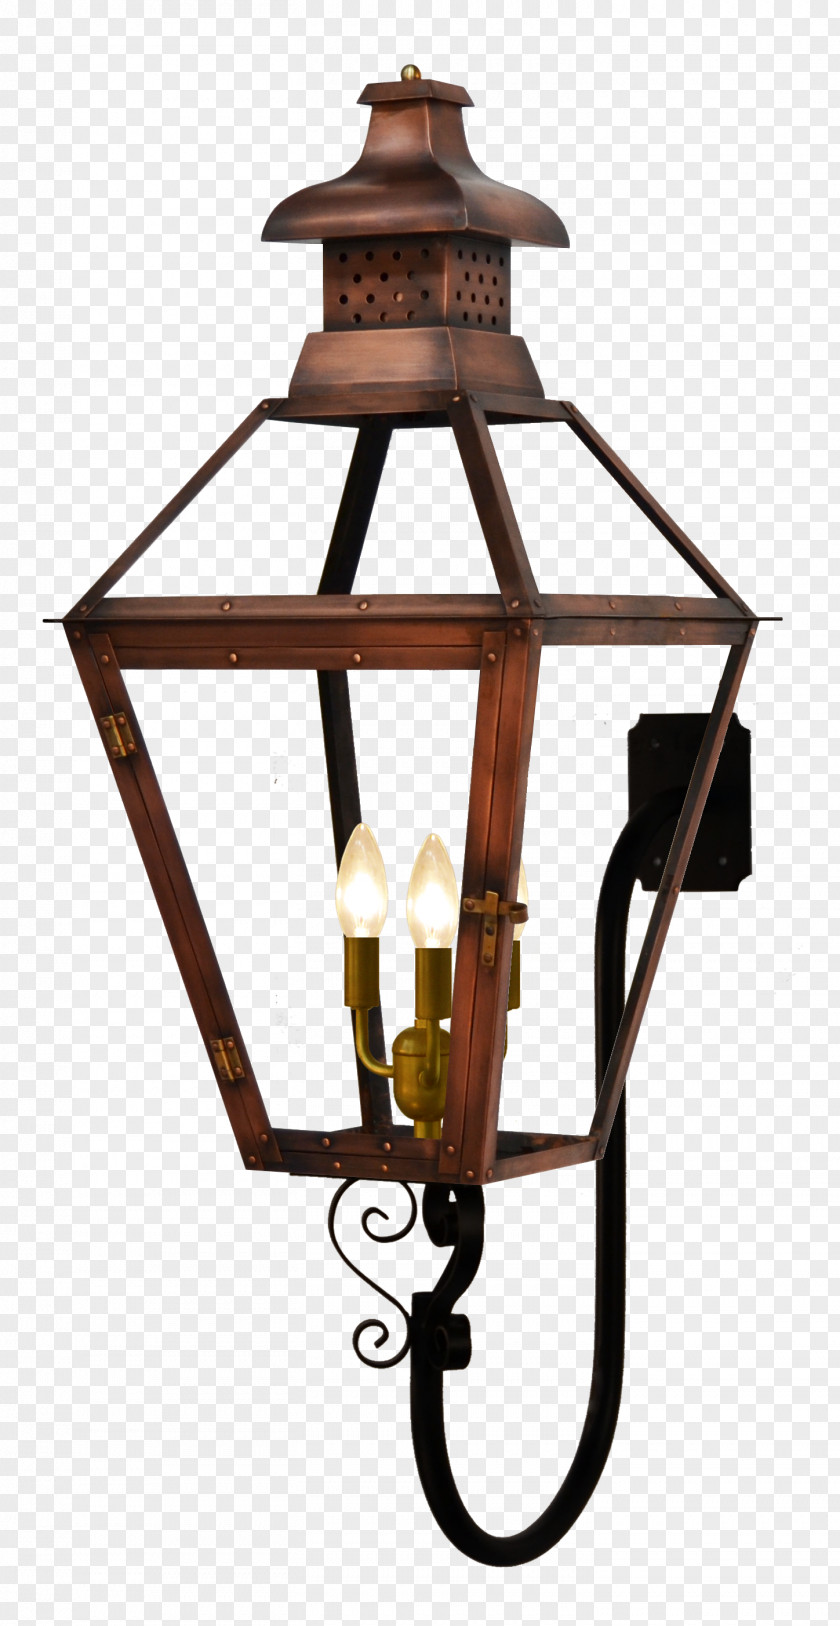 Kongming Latern Gas Lighting Lantern Sconce PNG